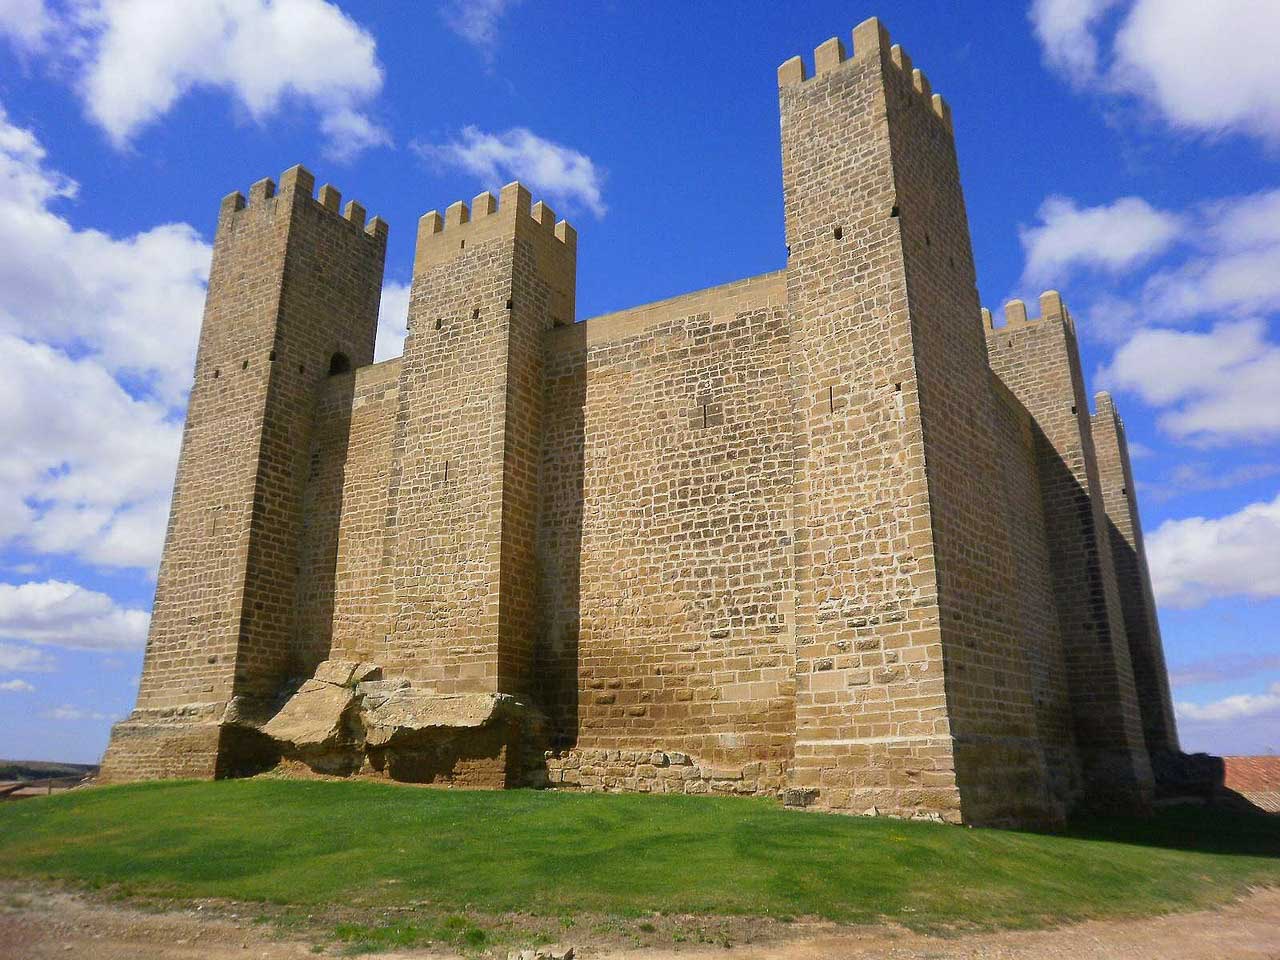 the castle of zaragoza